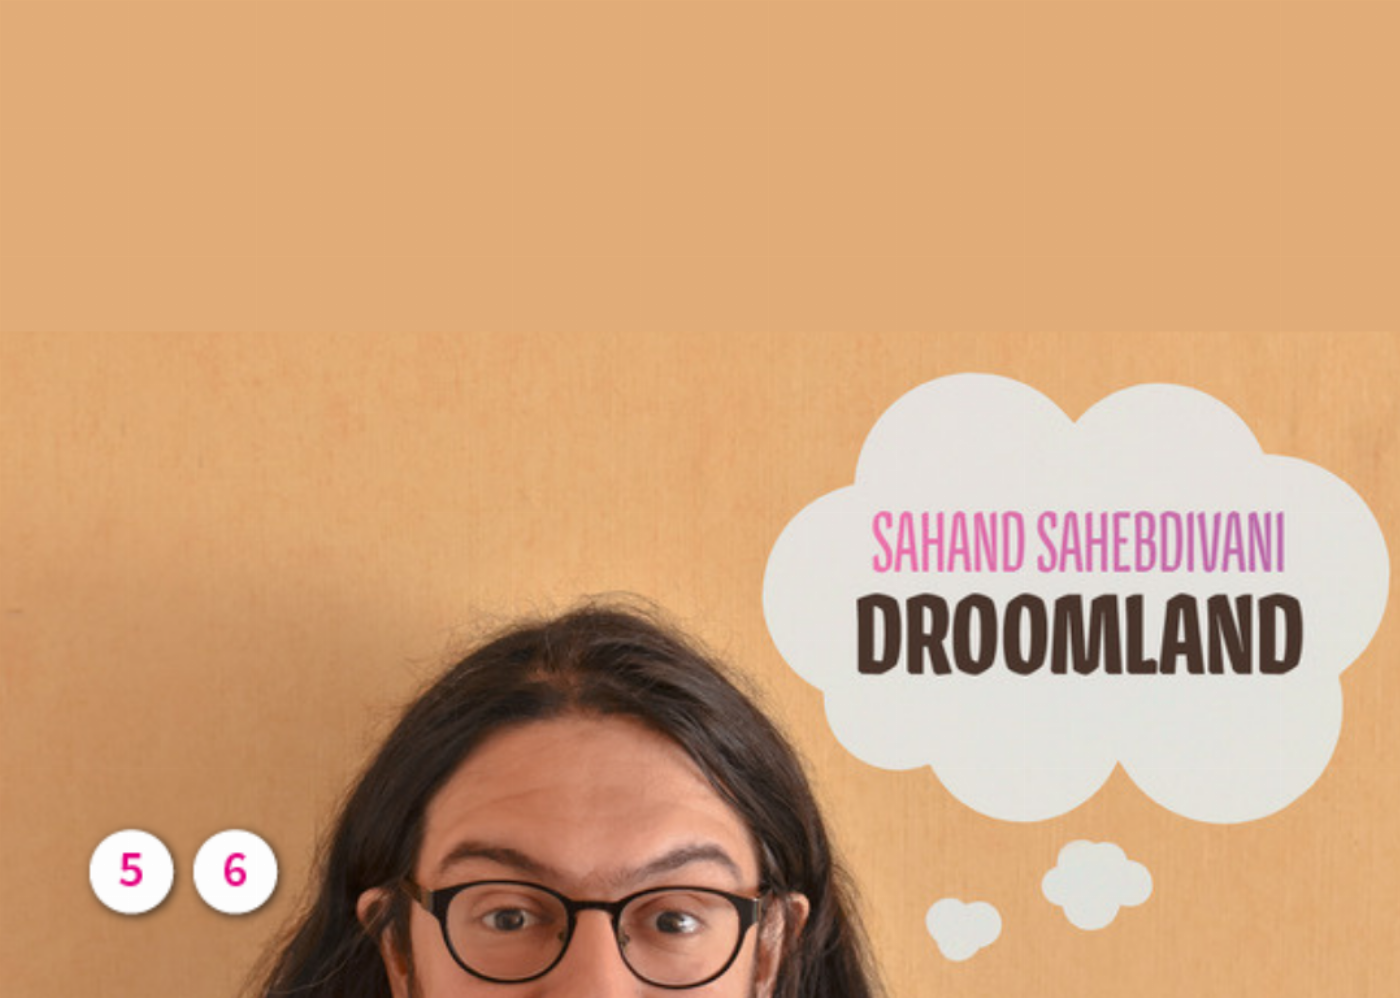 Droomland – Sahand Sahebdivani 